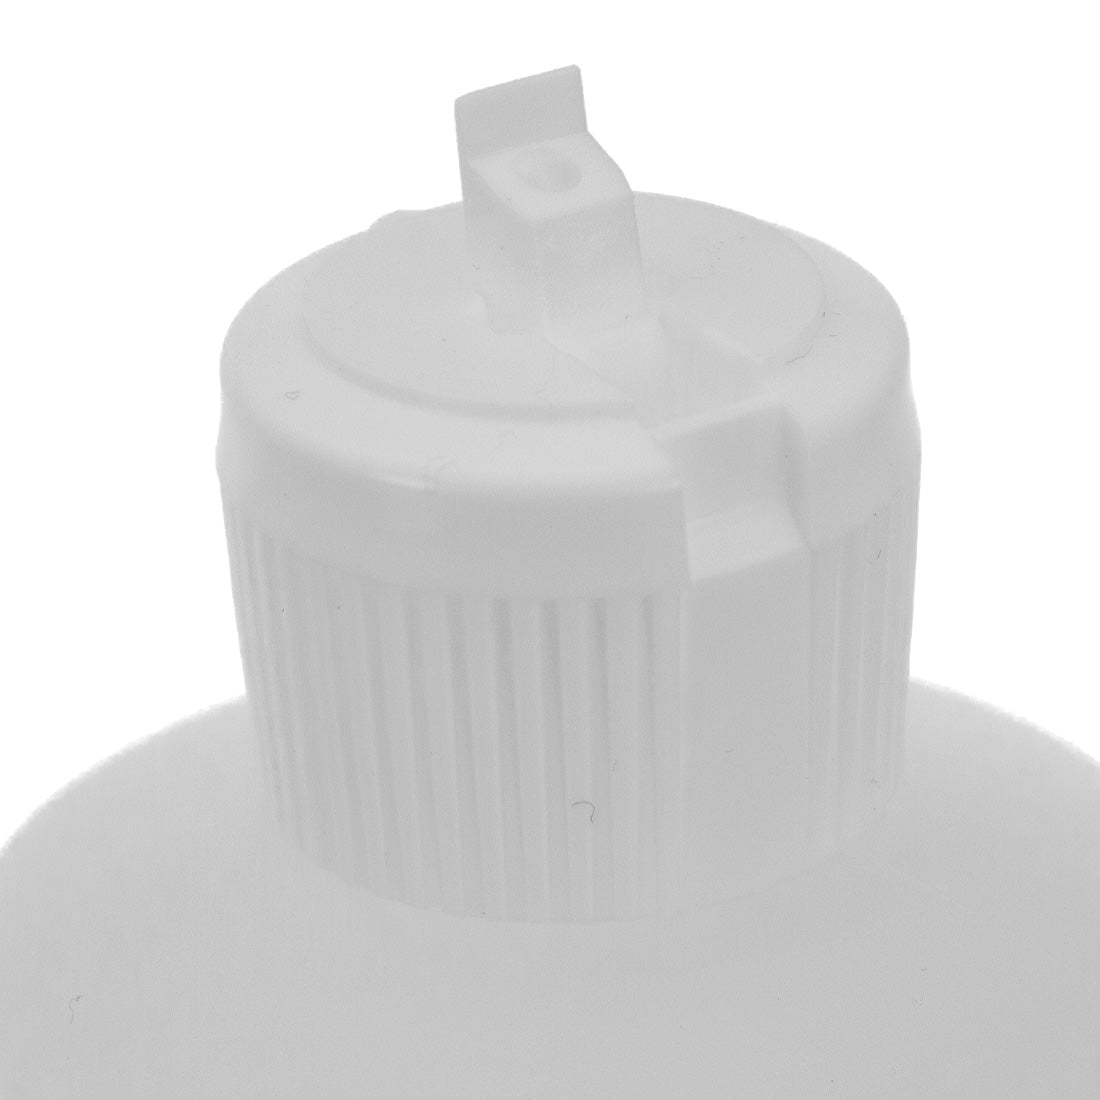 World Enterprises Squirt Bottle - 16 oz Detailed Head Nozzle Up Close-Up View